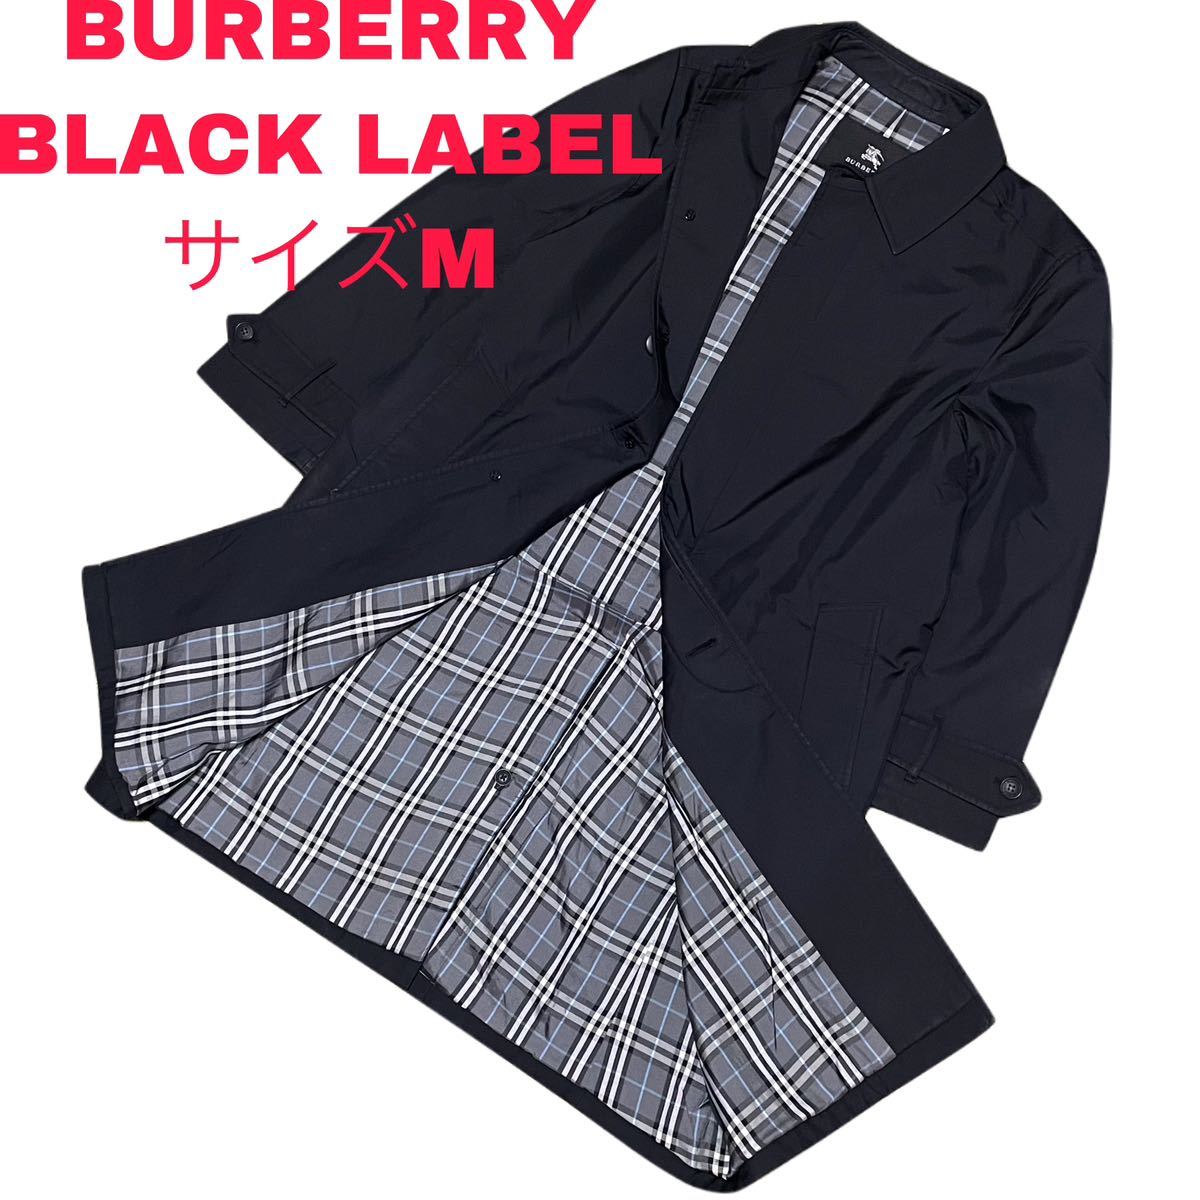 ○美品 BURBERRY BLACK LABEL コートトレンチコート M 黒 ステンカラー